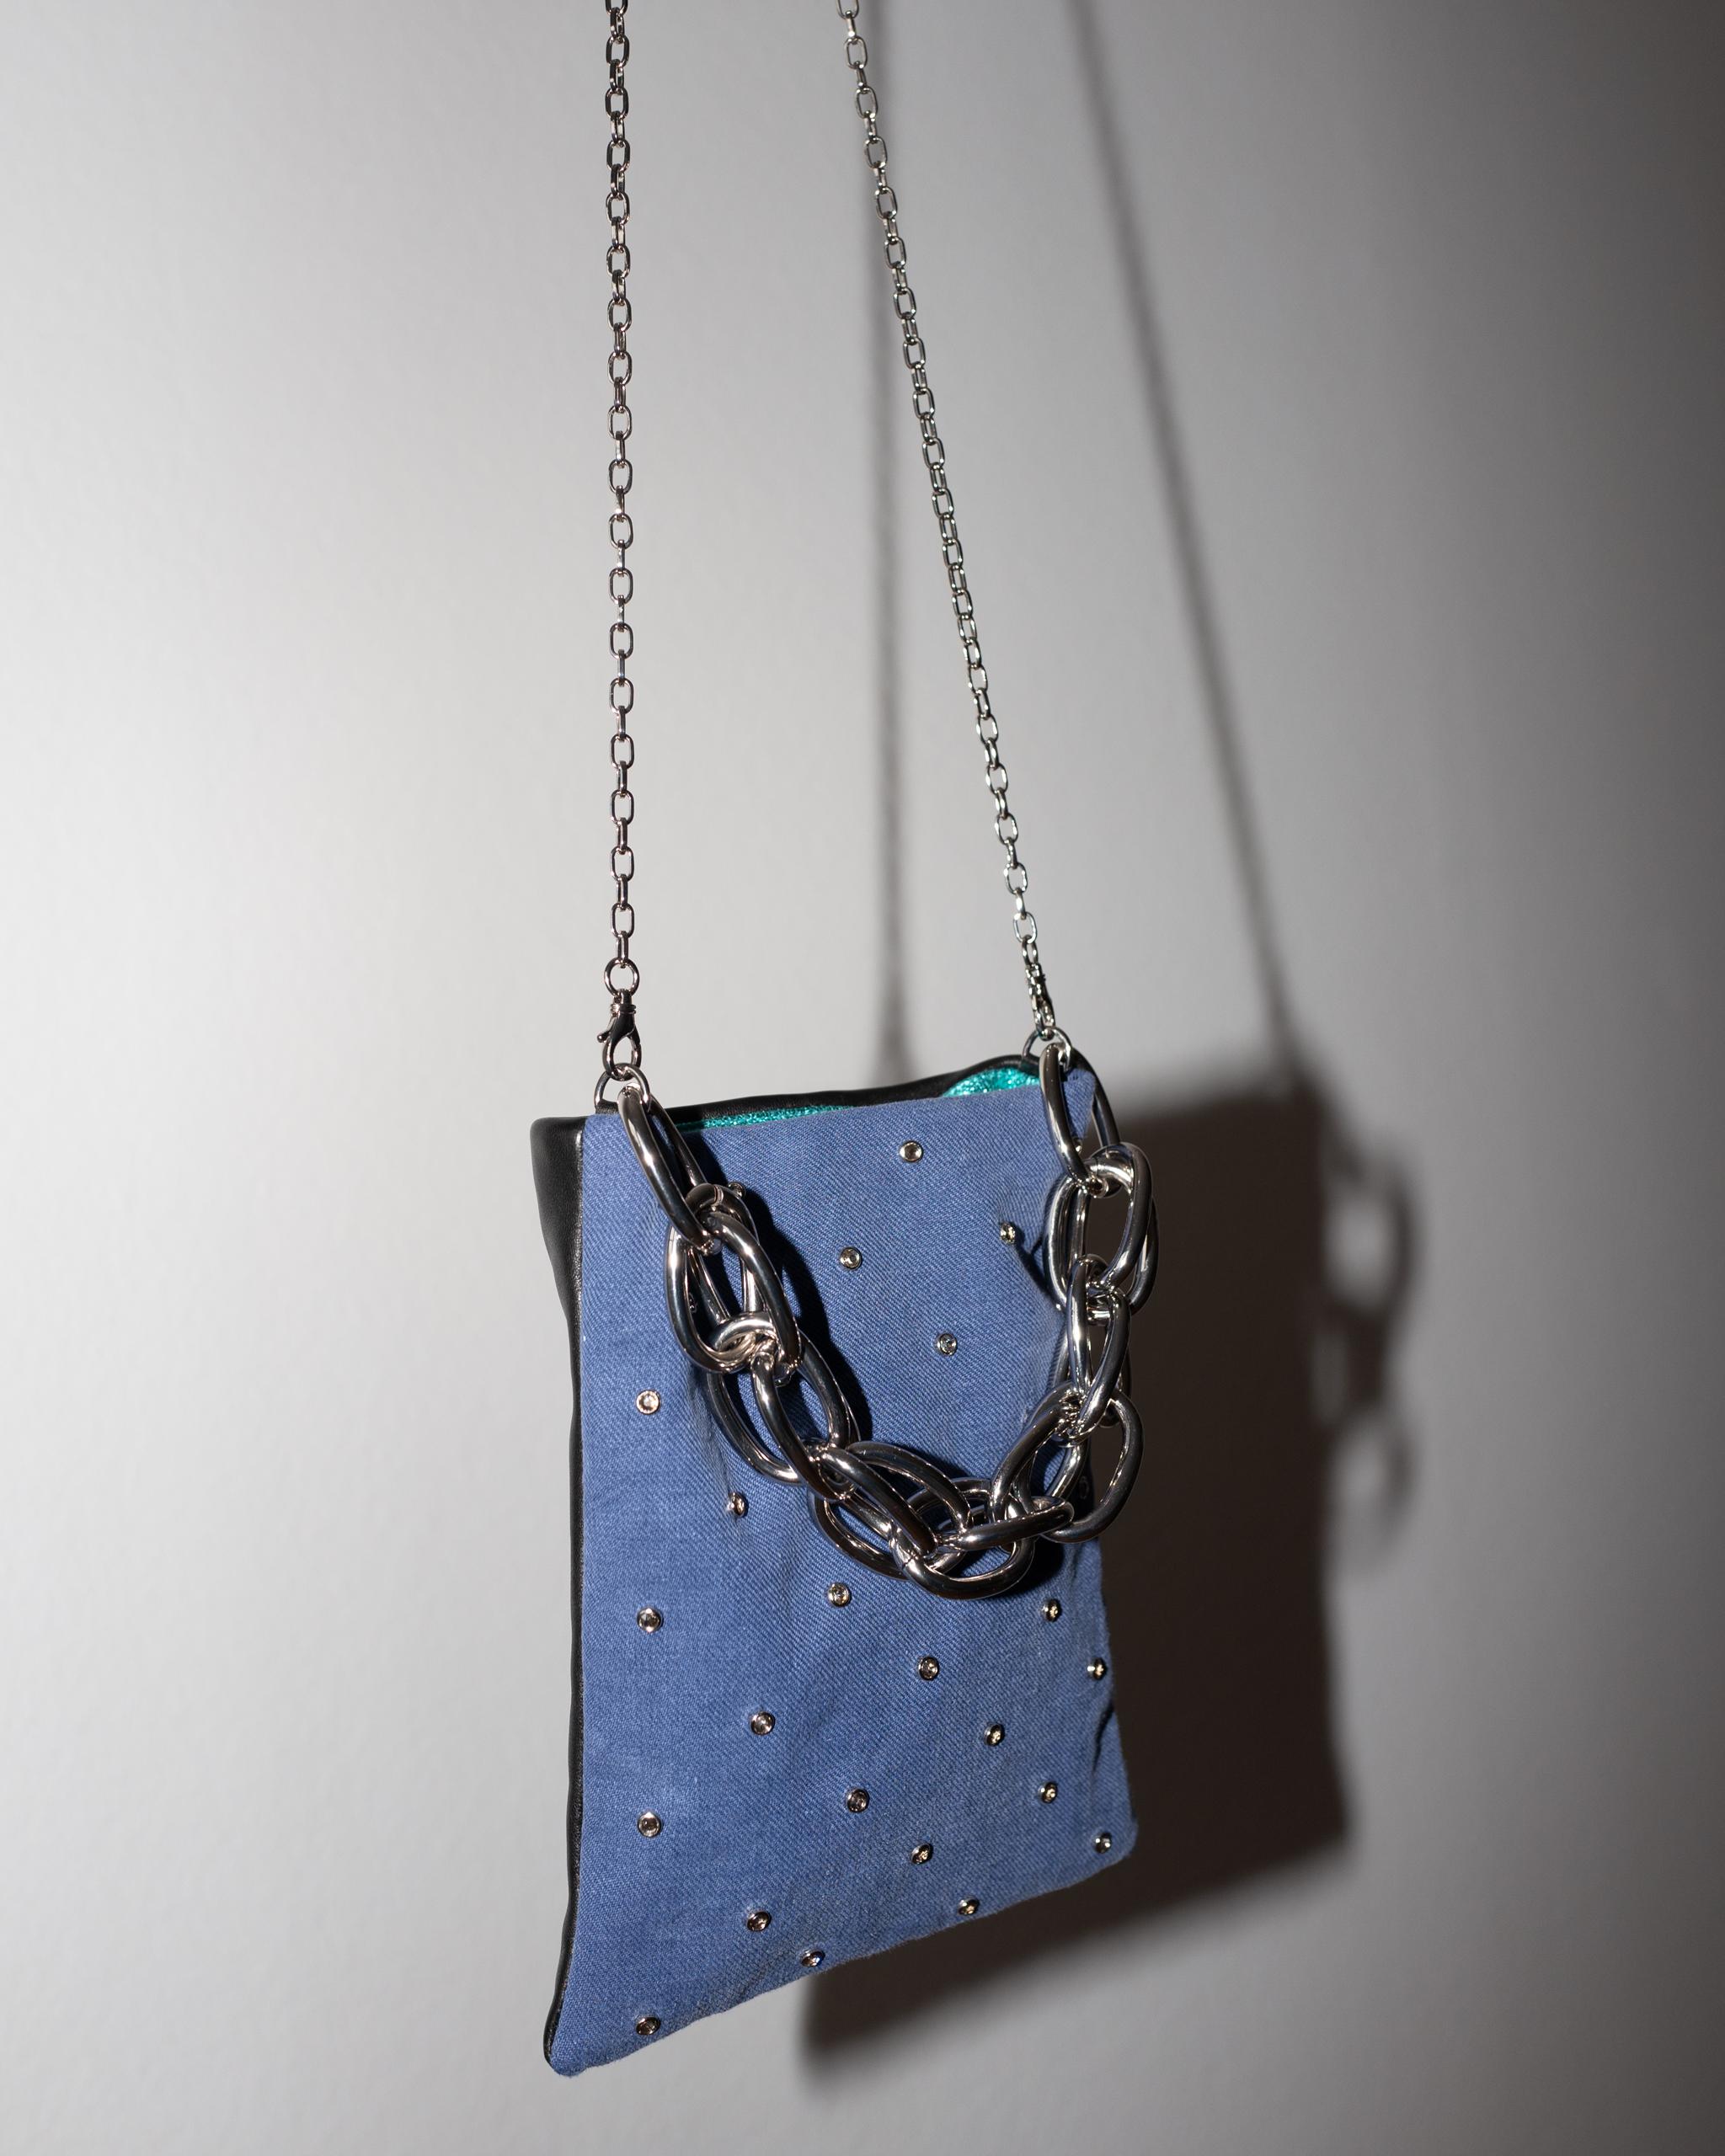 Crystal Embellished Blue Evening Shoulder Bag Black Leather Chunky Chain 4